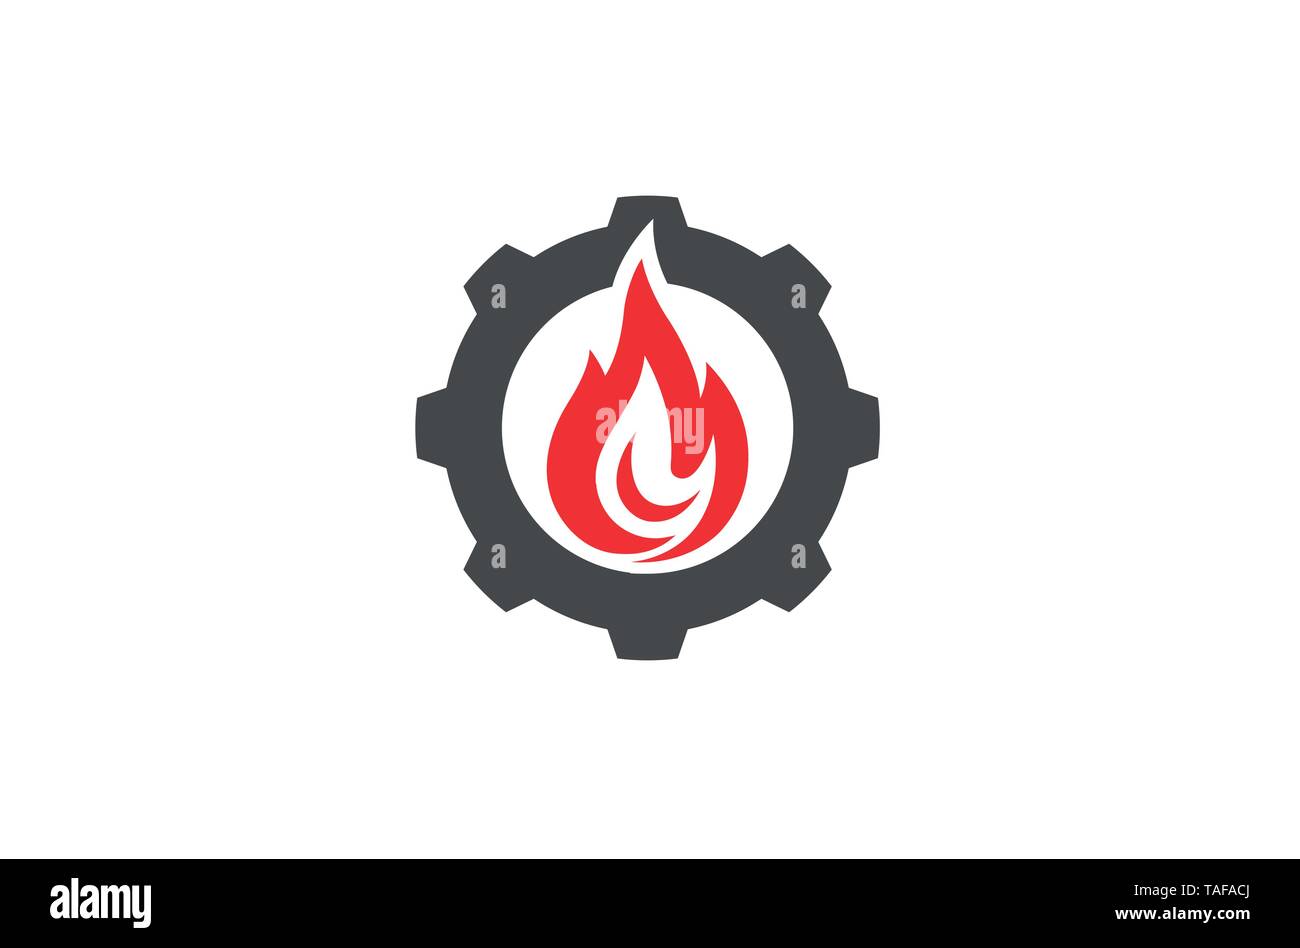 Creative Hot Gear Fire Logo Stock Vector